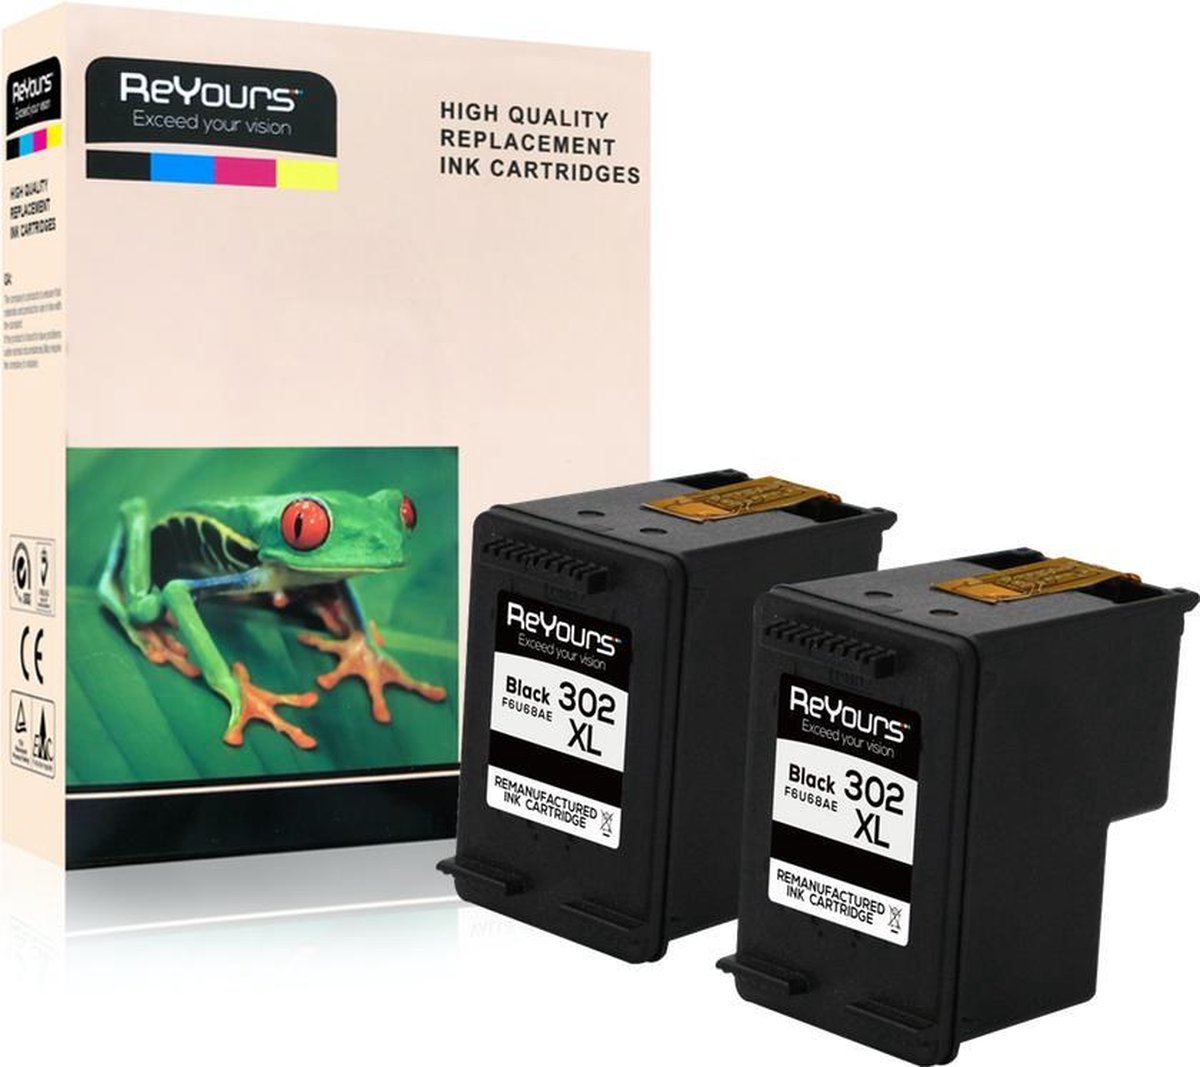 ReYours® HP302XL Remanufactured Inktcartridge 302XL Zwart (20ml) 2pack- met chip - inktniveau weergeven